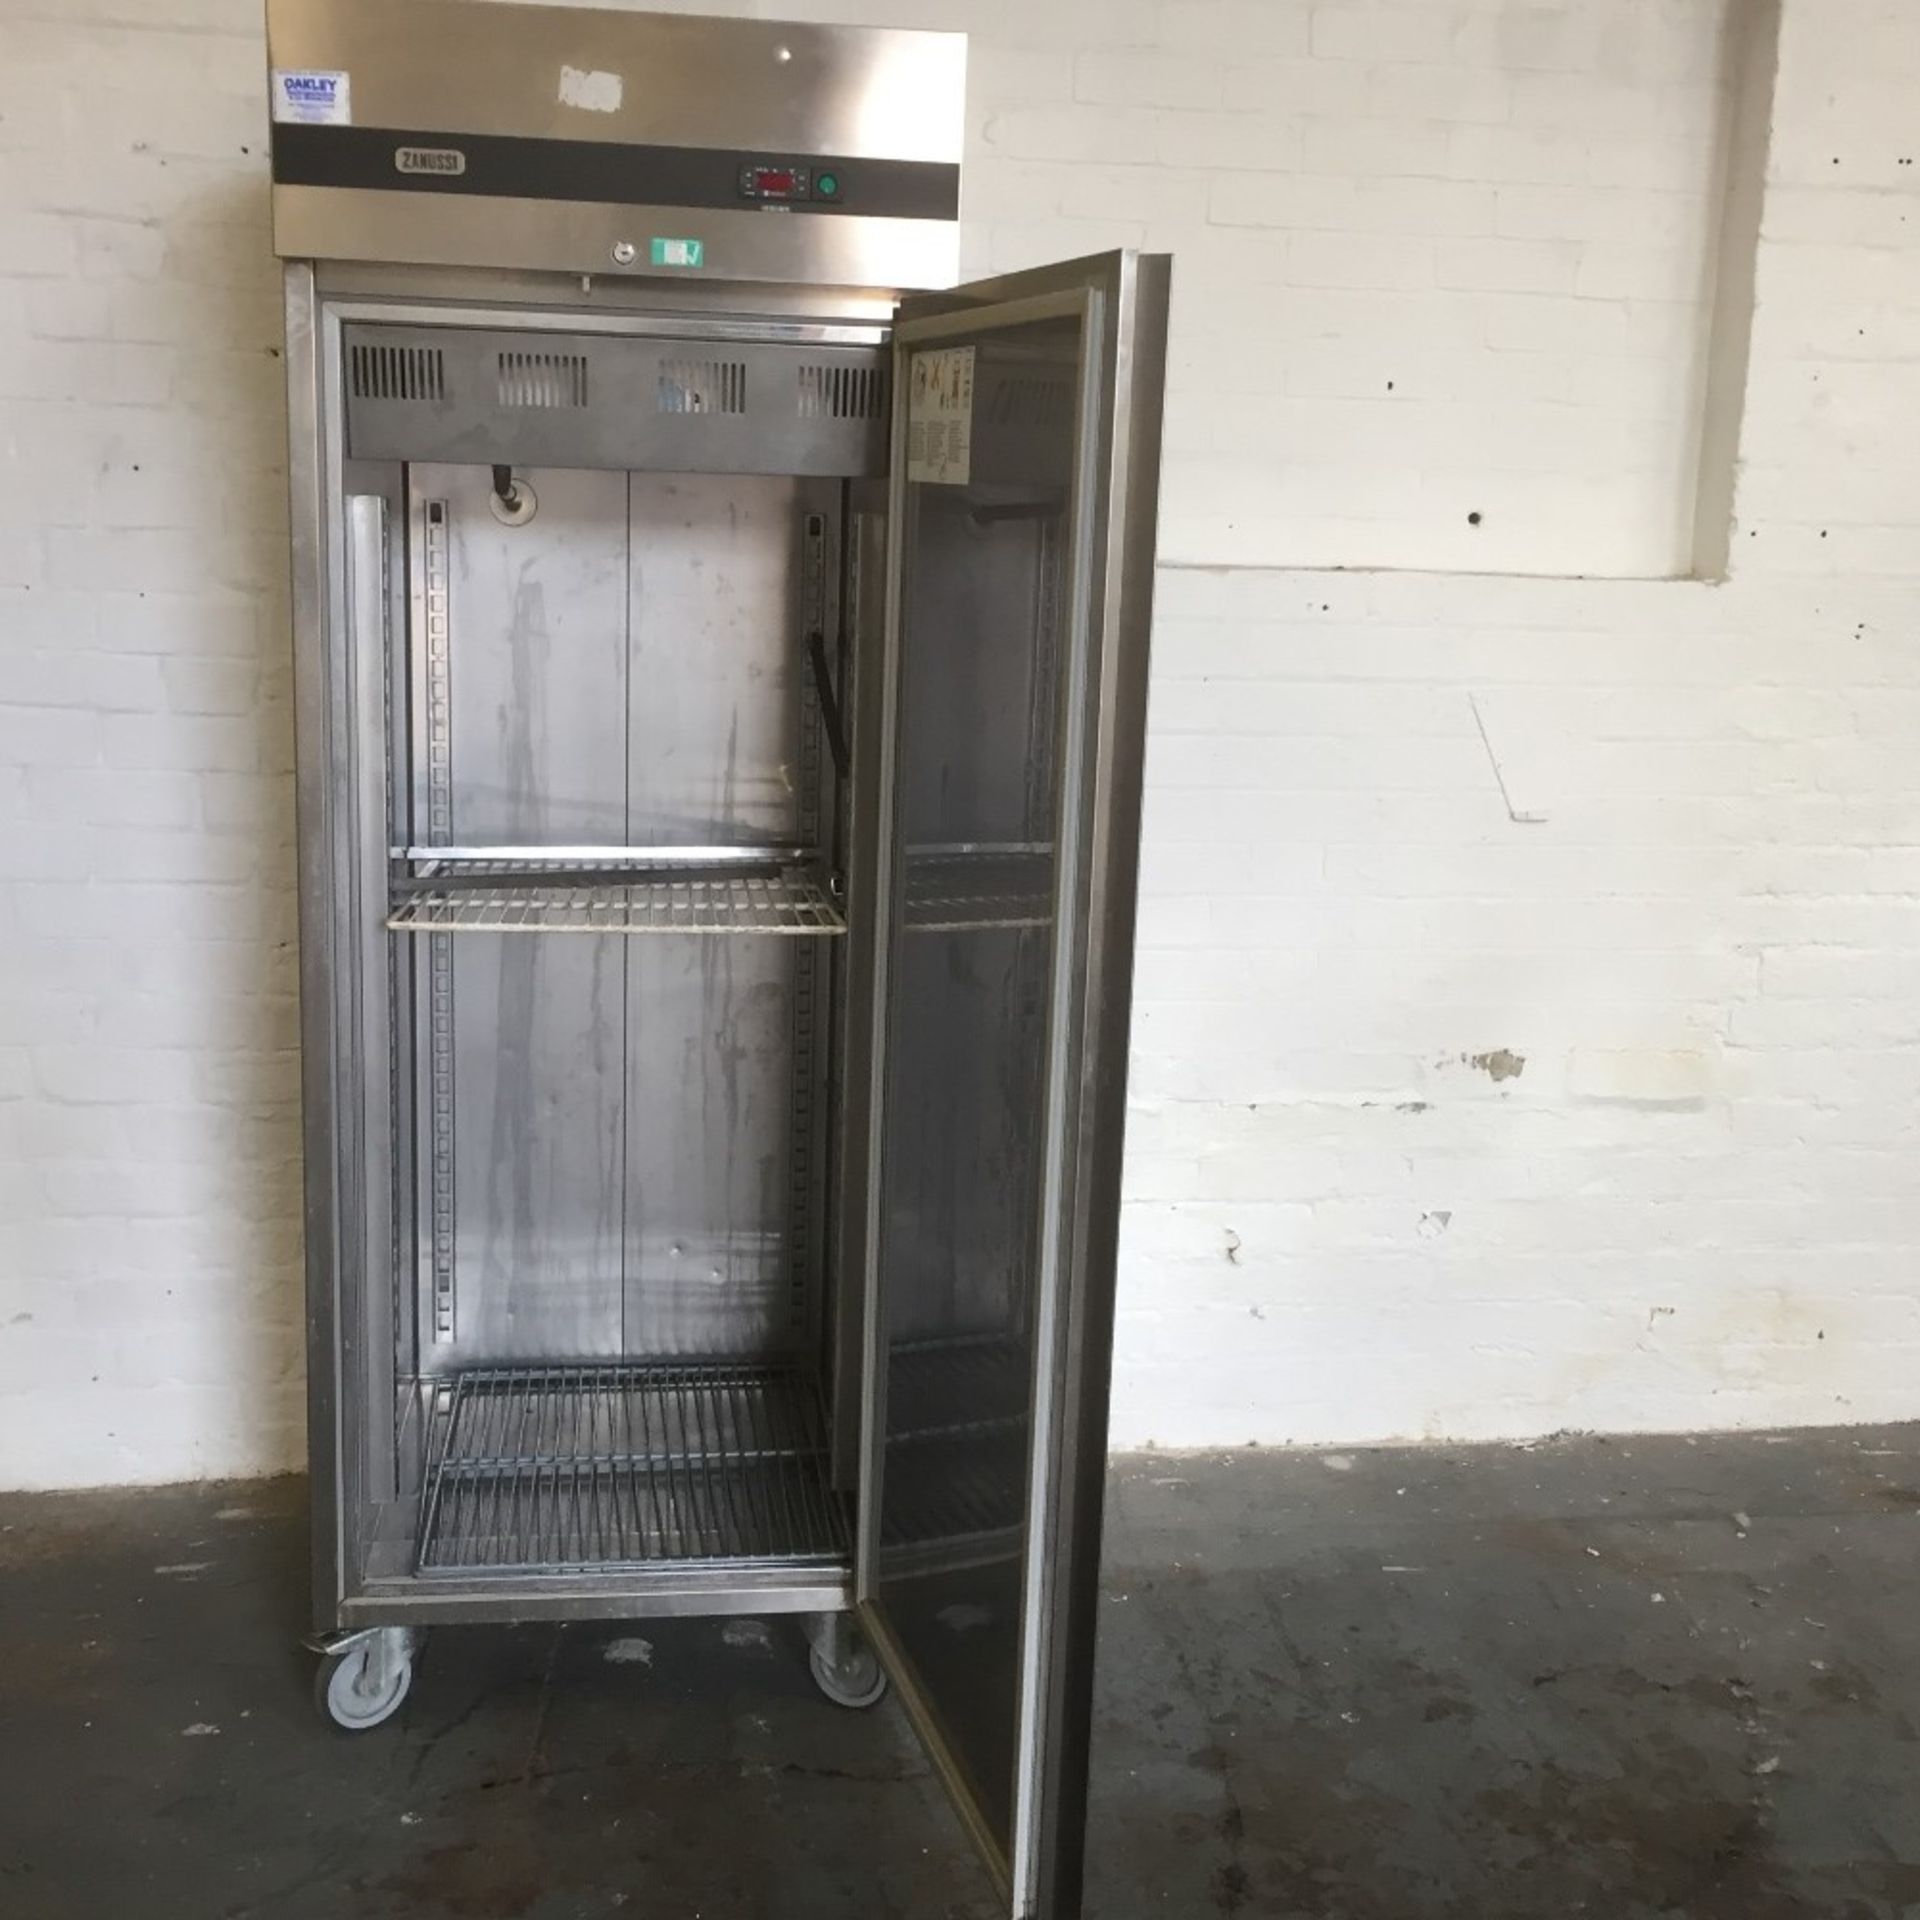 Zanussi Single Door Freezer – Tested – NO VAT - Image 2 of 3